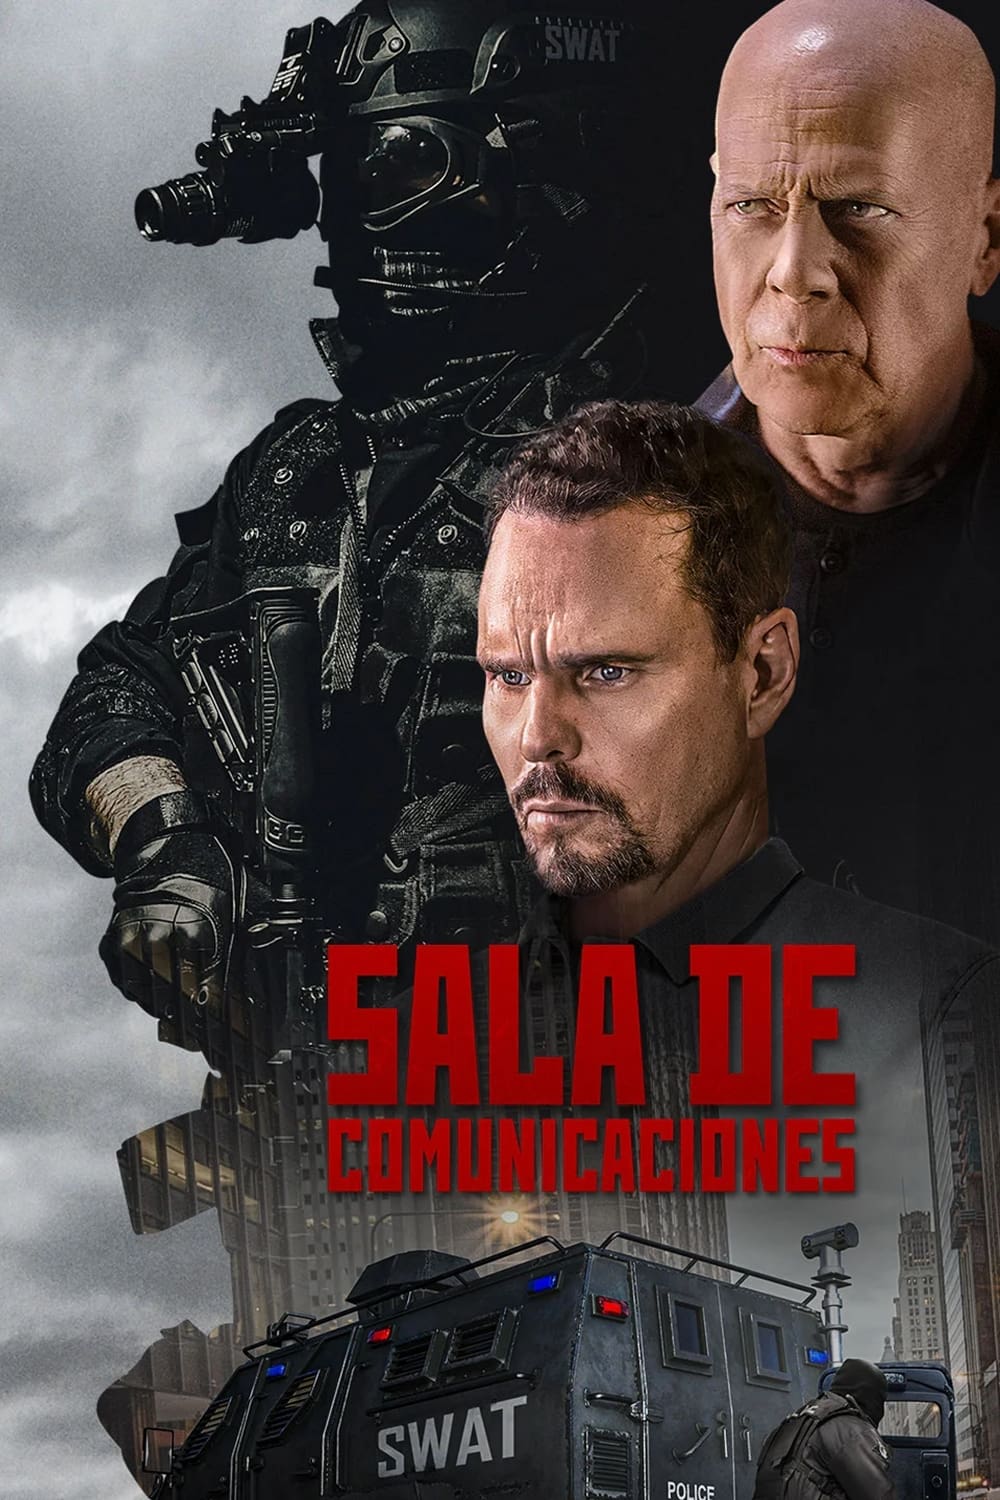 portada de la pelicula Sala de comunicaciones latino descargar mega